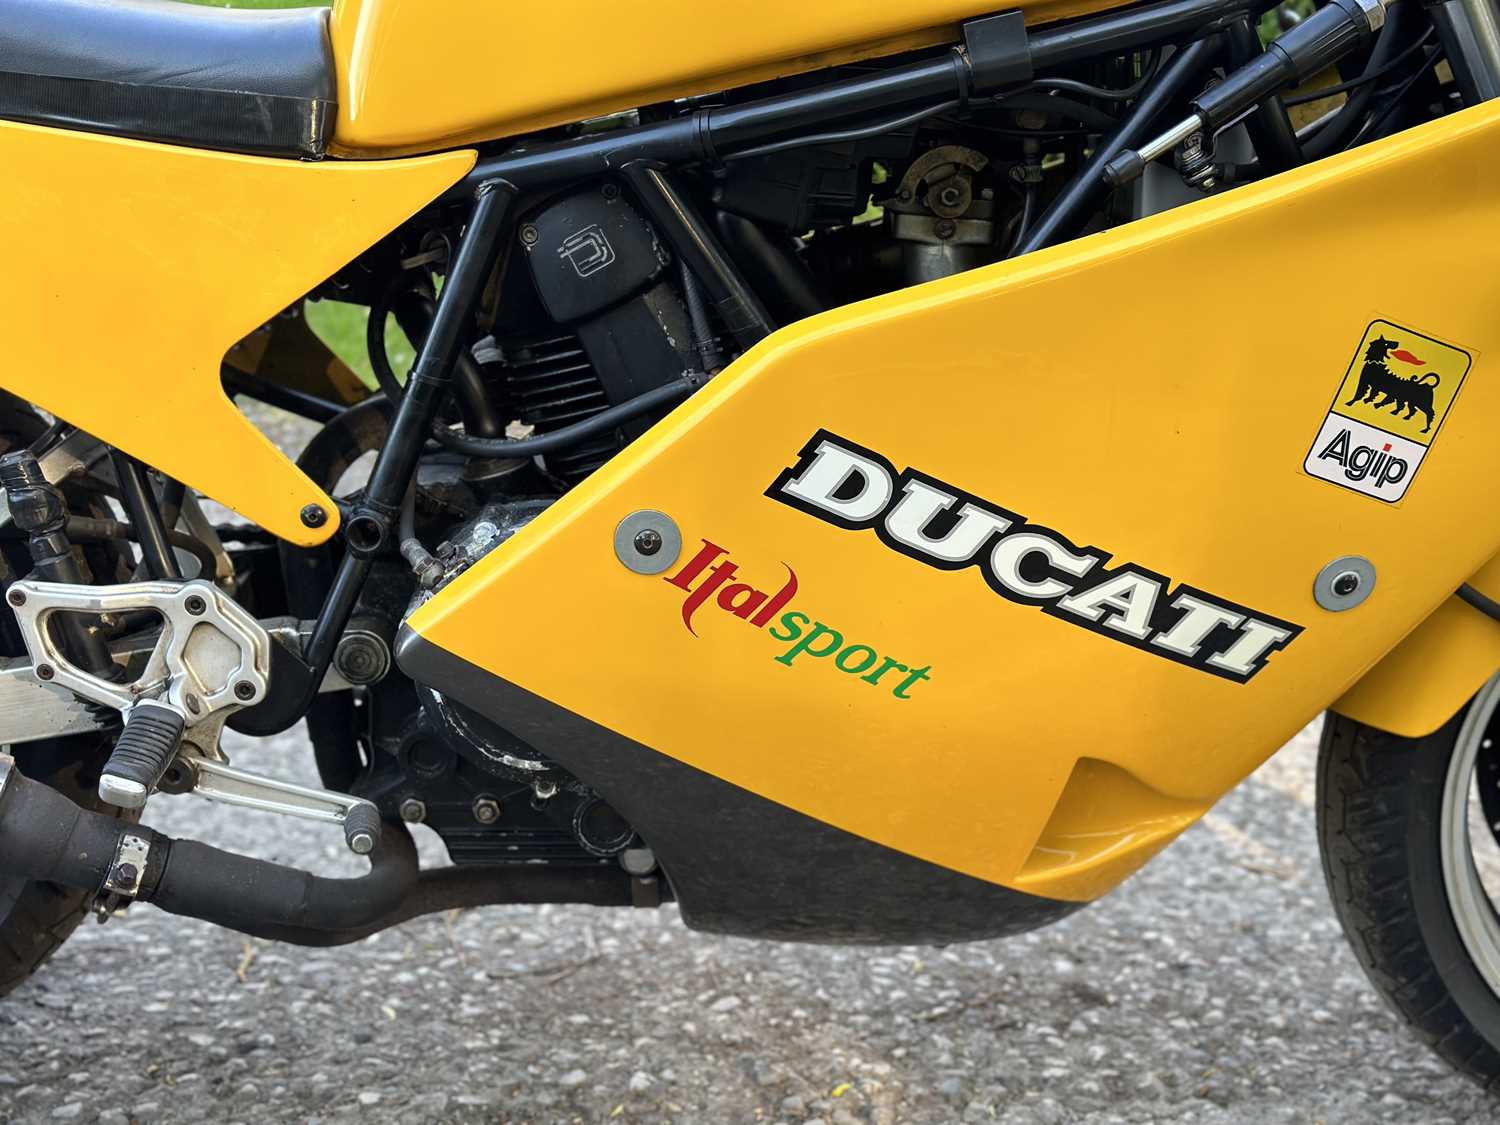 1990 Ducati 750 Sport Desmo - Image 14 of 17